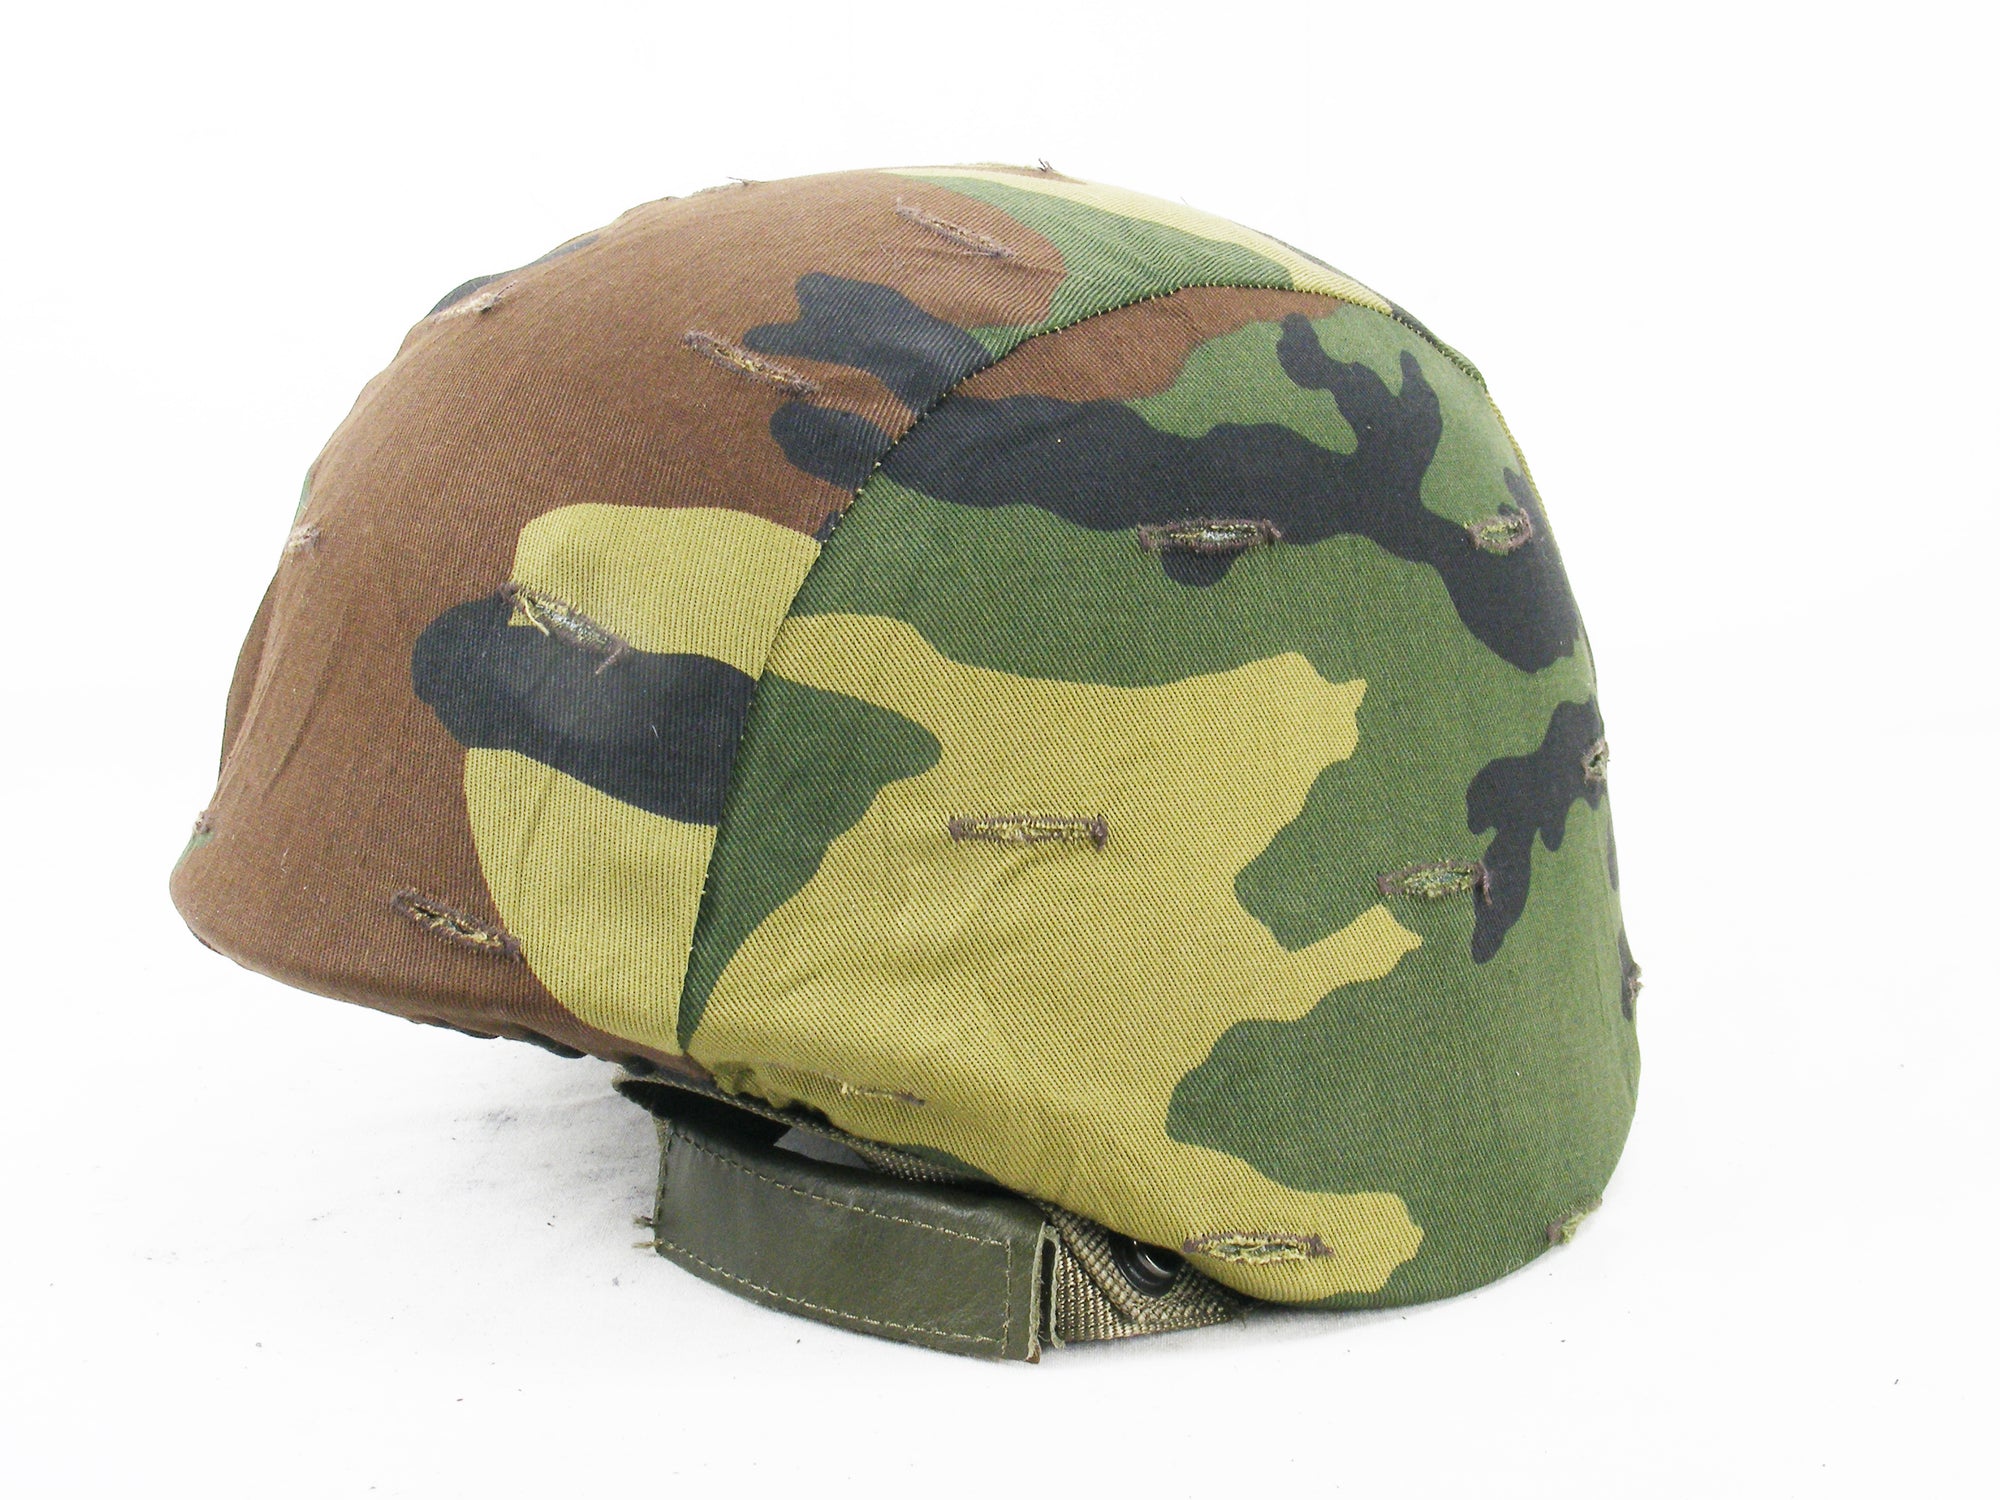 Italian Woodland Camo helmet cover - fits small Kevlar models